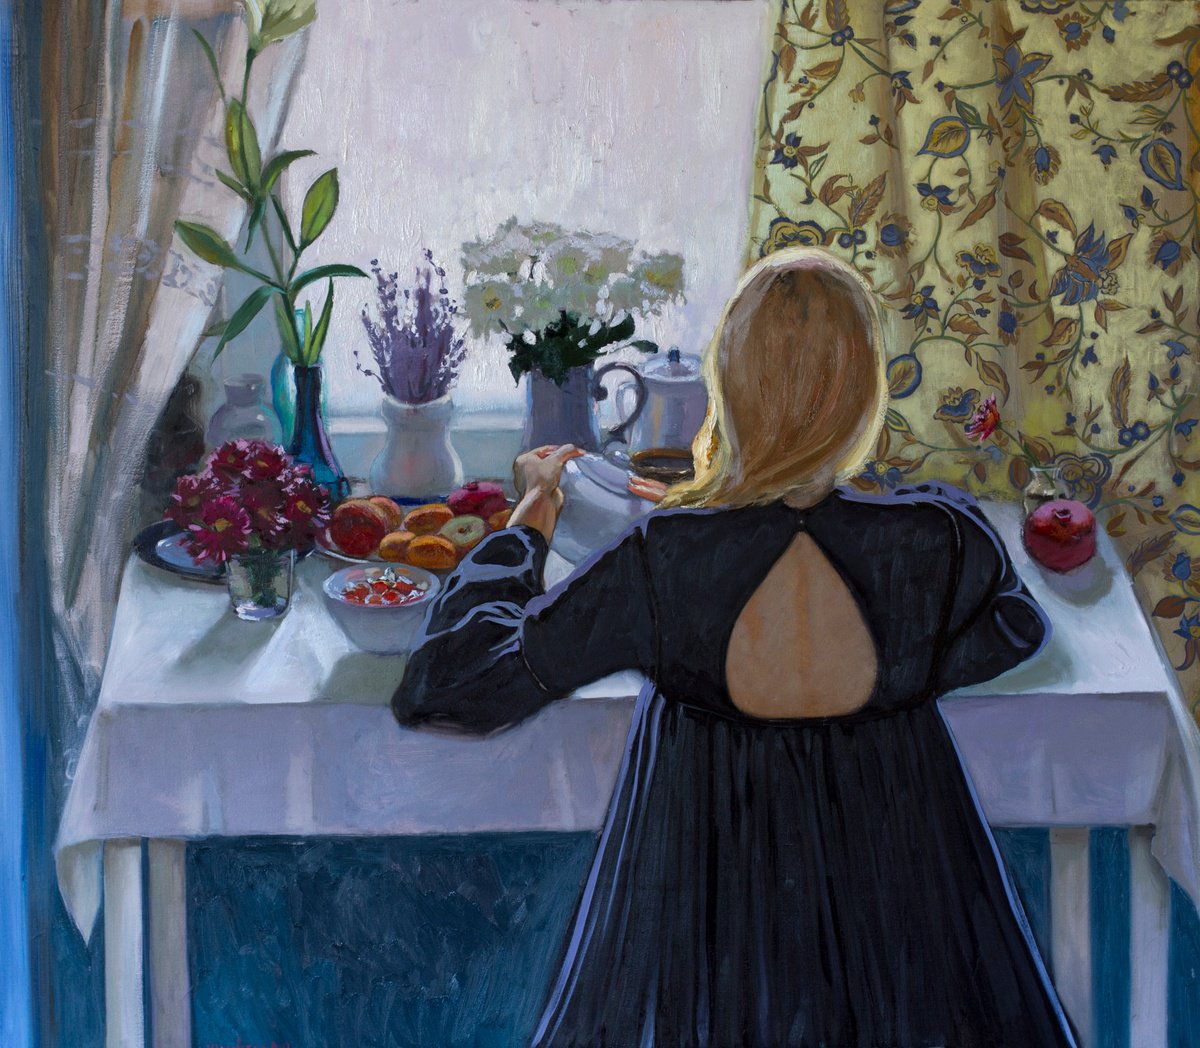 Morning tea by Alina Sharovskaya-Konstantinova